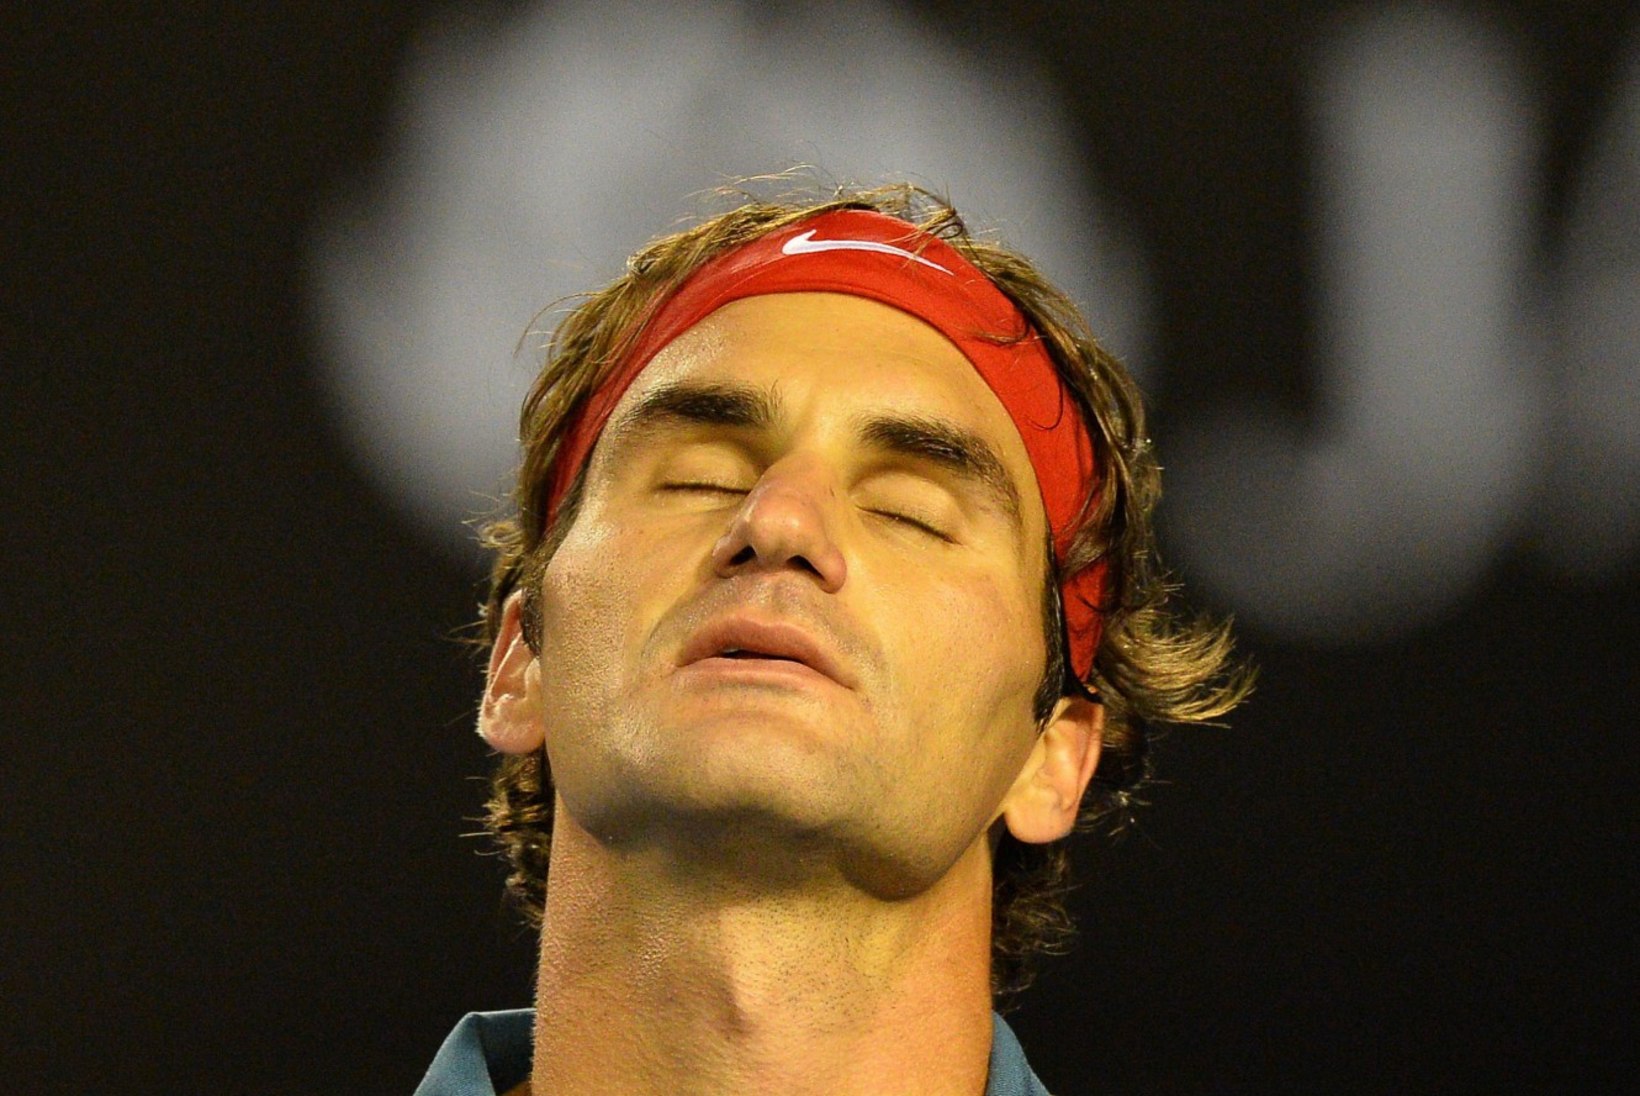 TÕESTUS: Nadal on parem kui Federer. Vähemalt omavahel!